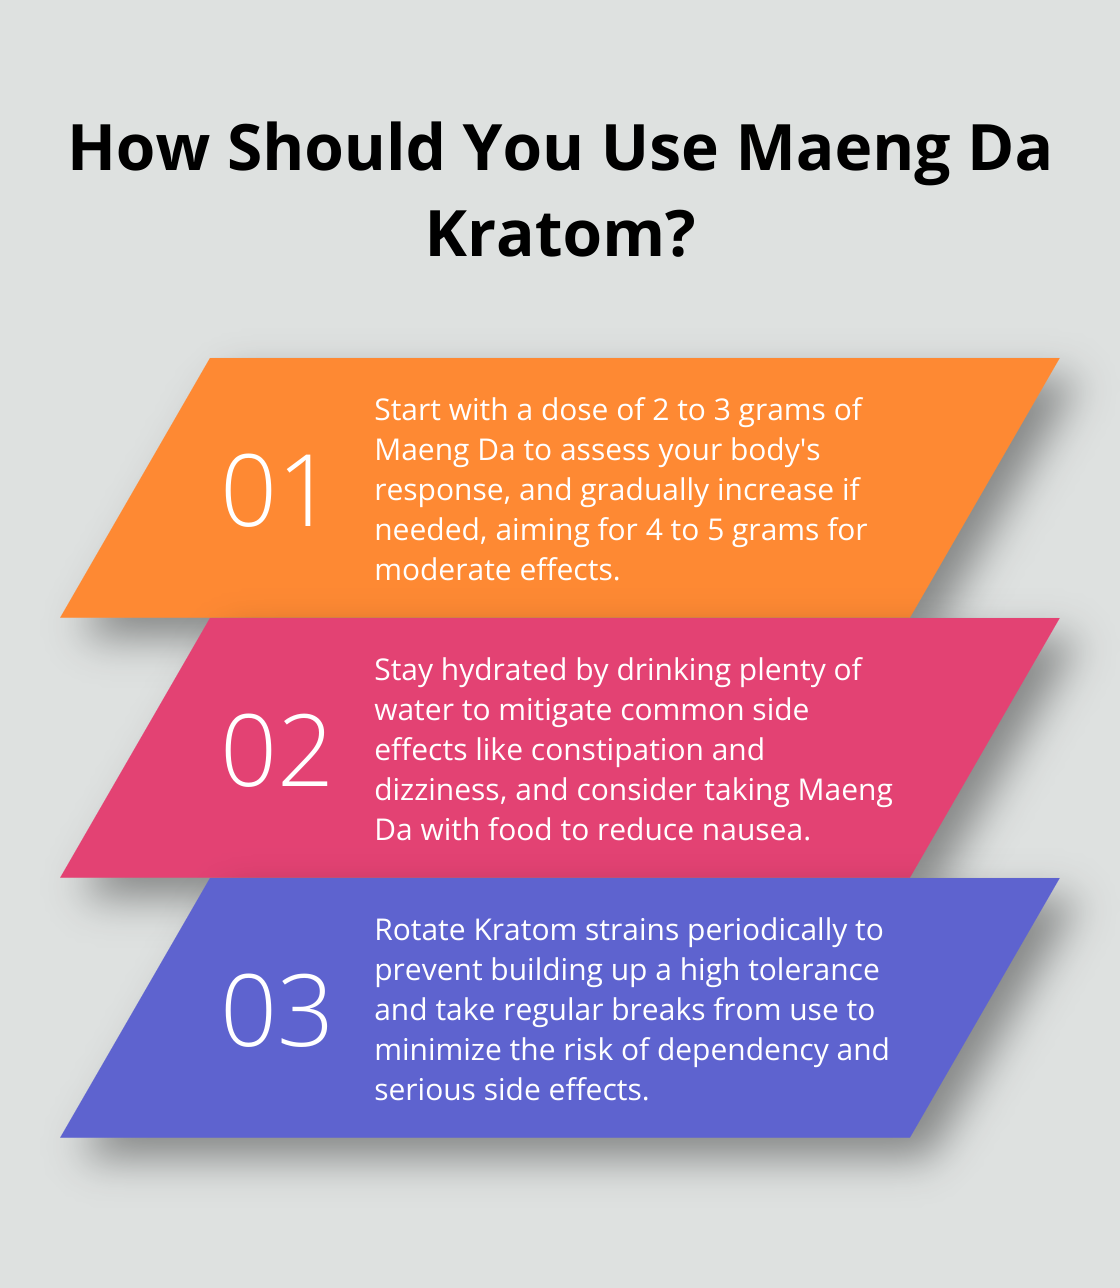 Fact - How Should You Use Maeng Da Kratom?